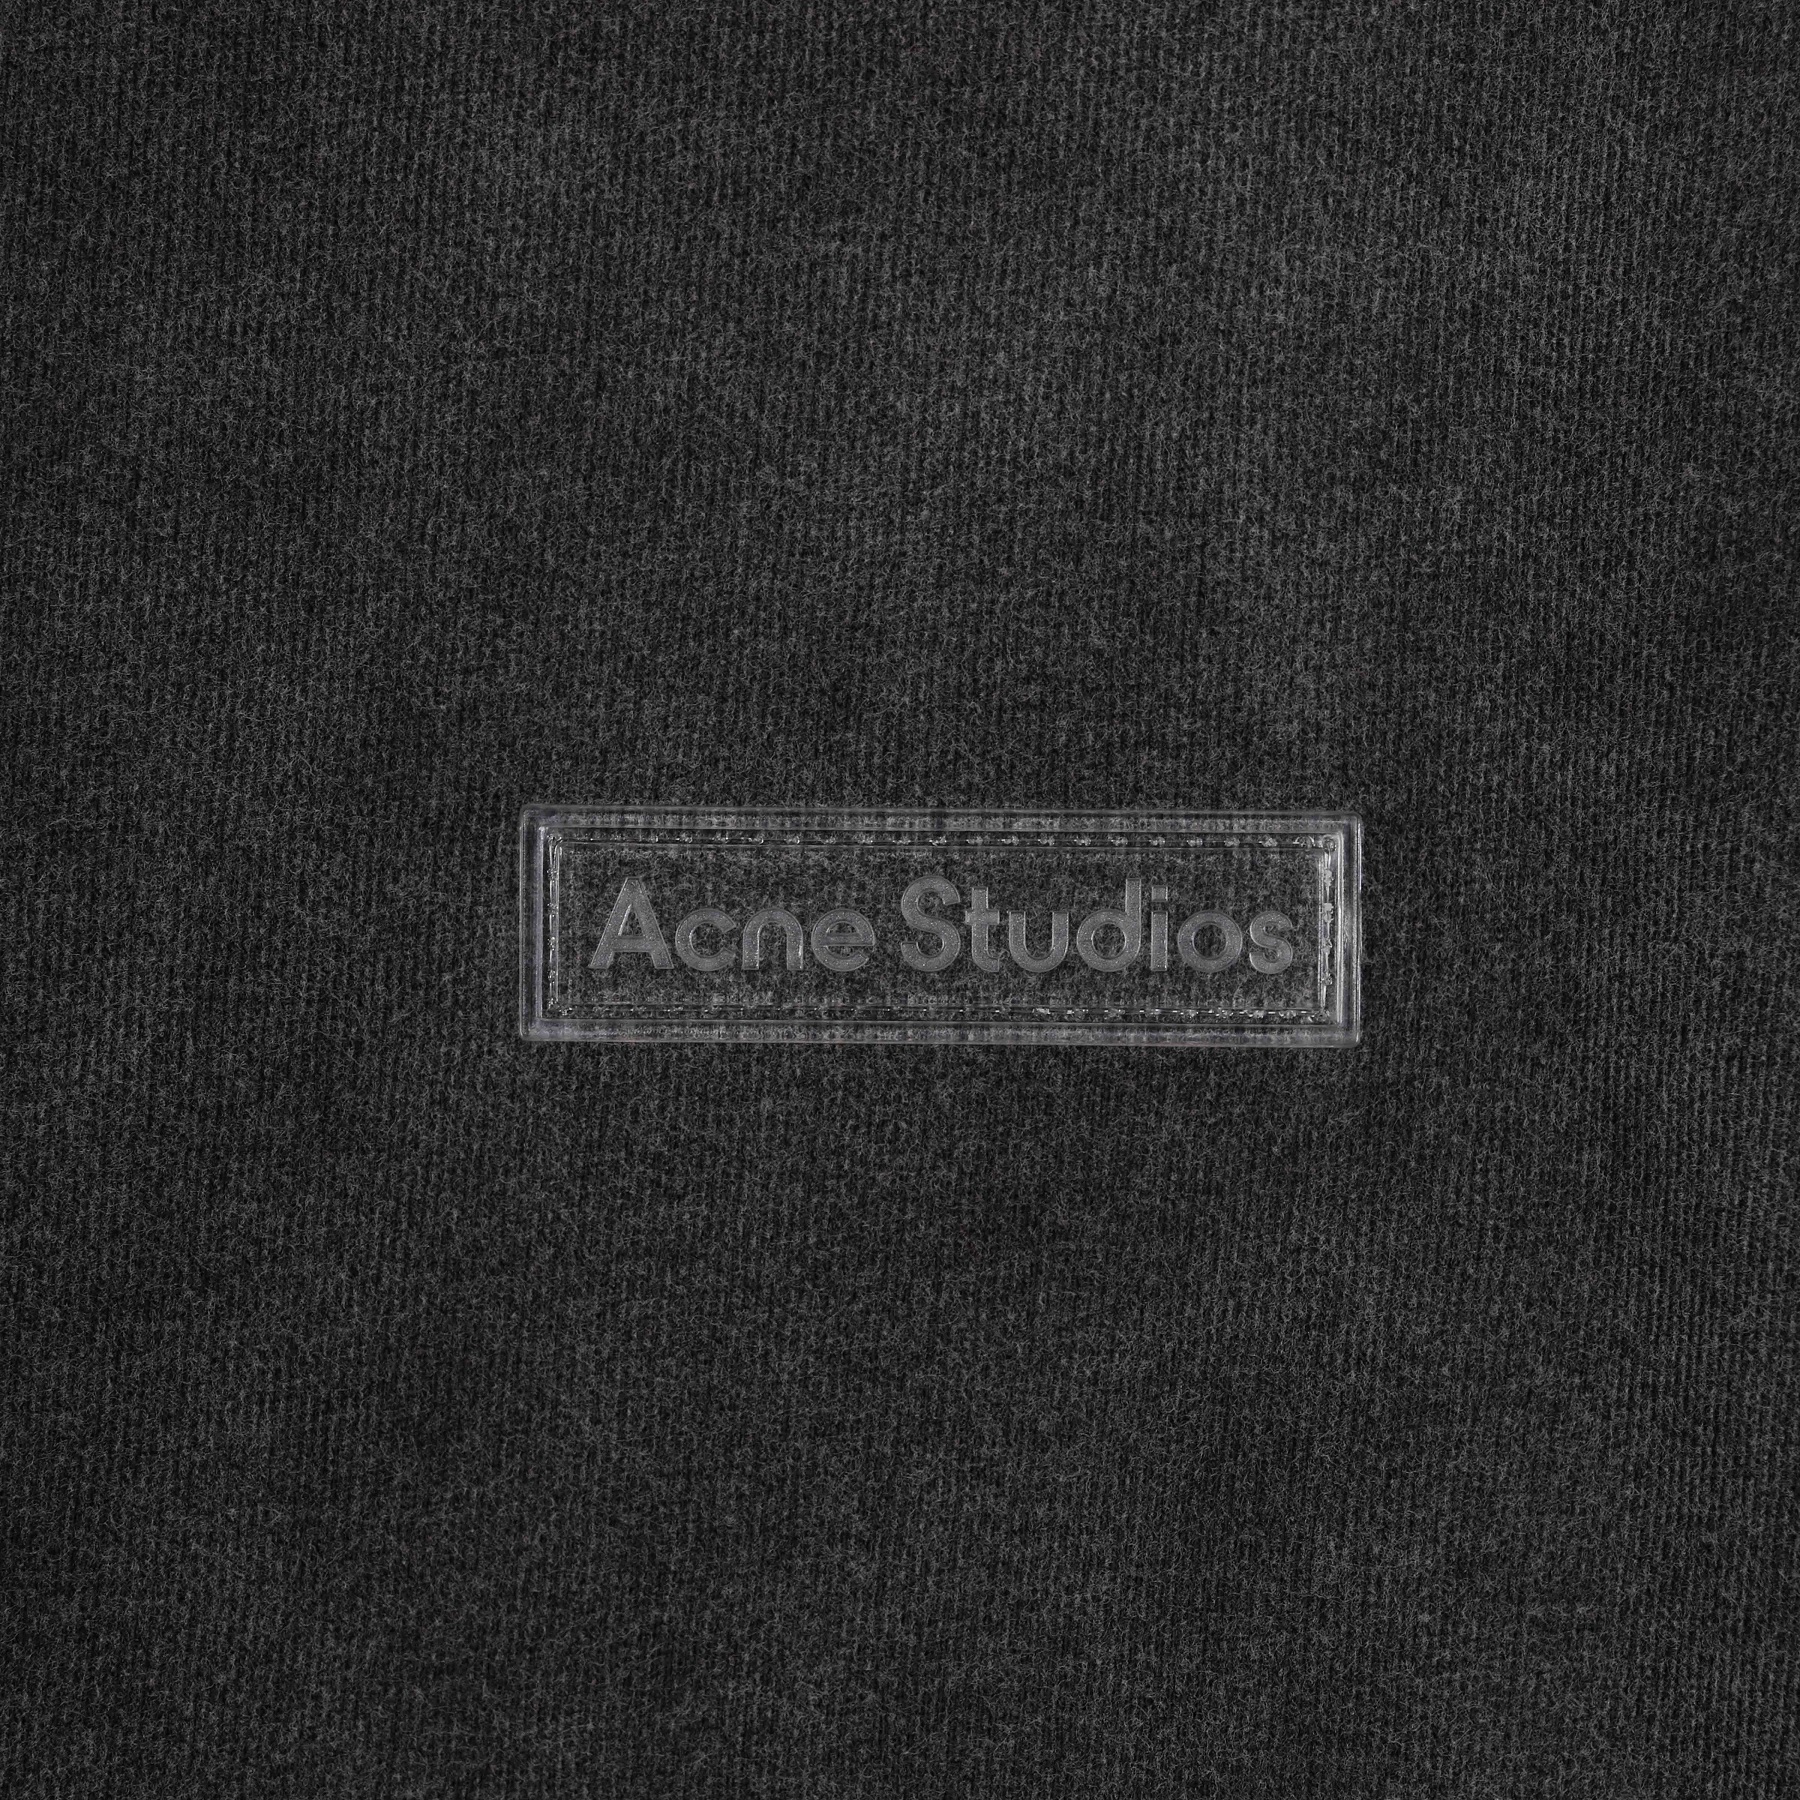 Acne Studios Oversize Longsleeve in Faded Black